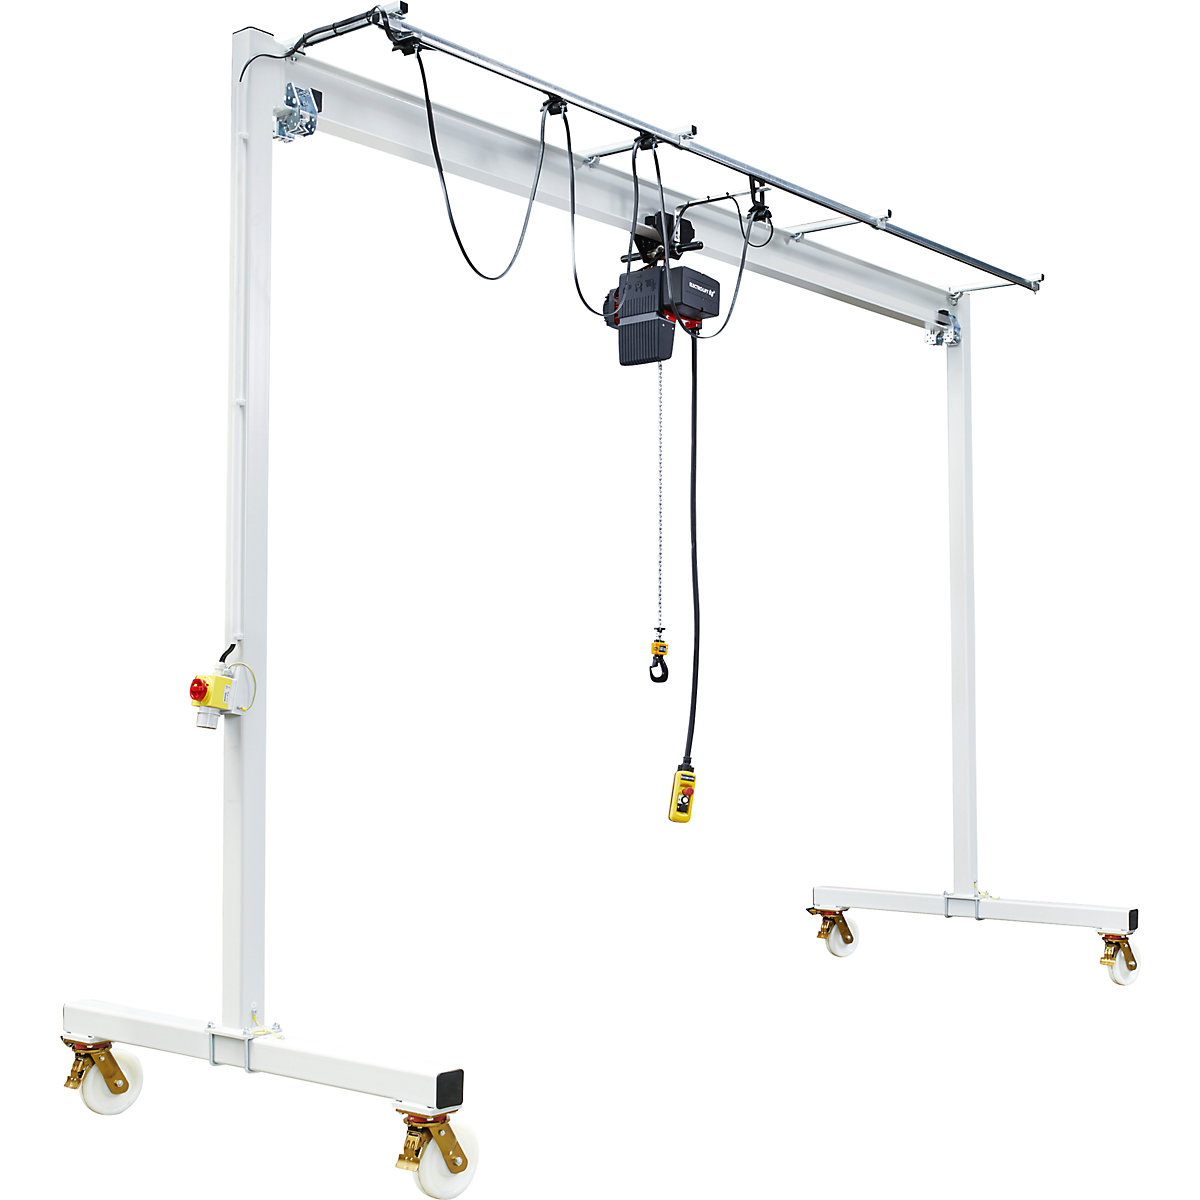 Steel mobile gantry crane PA - Vetter